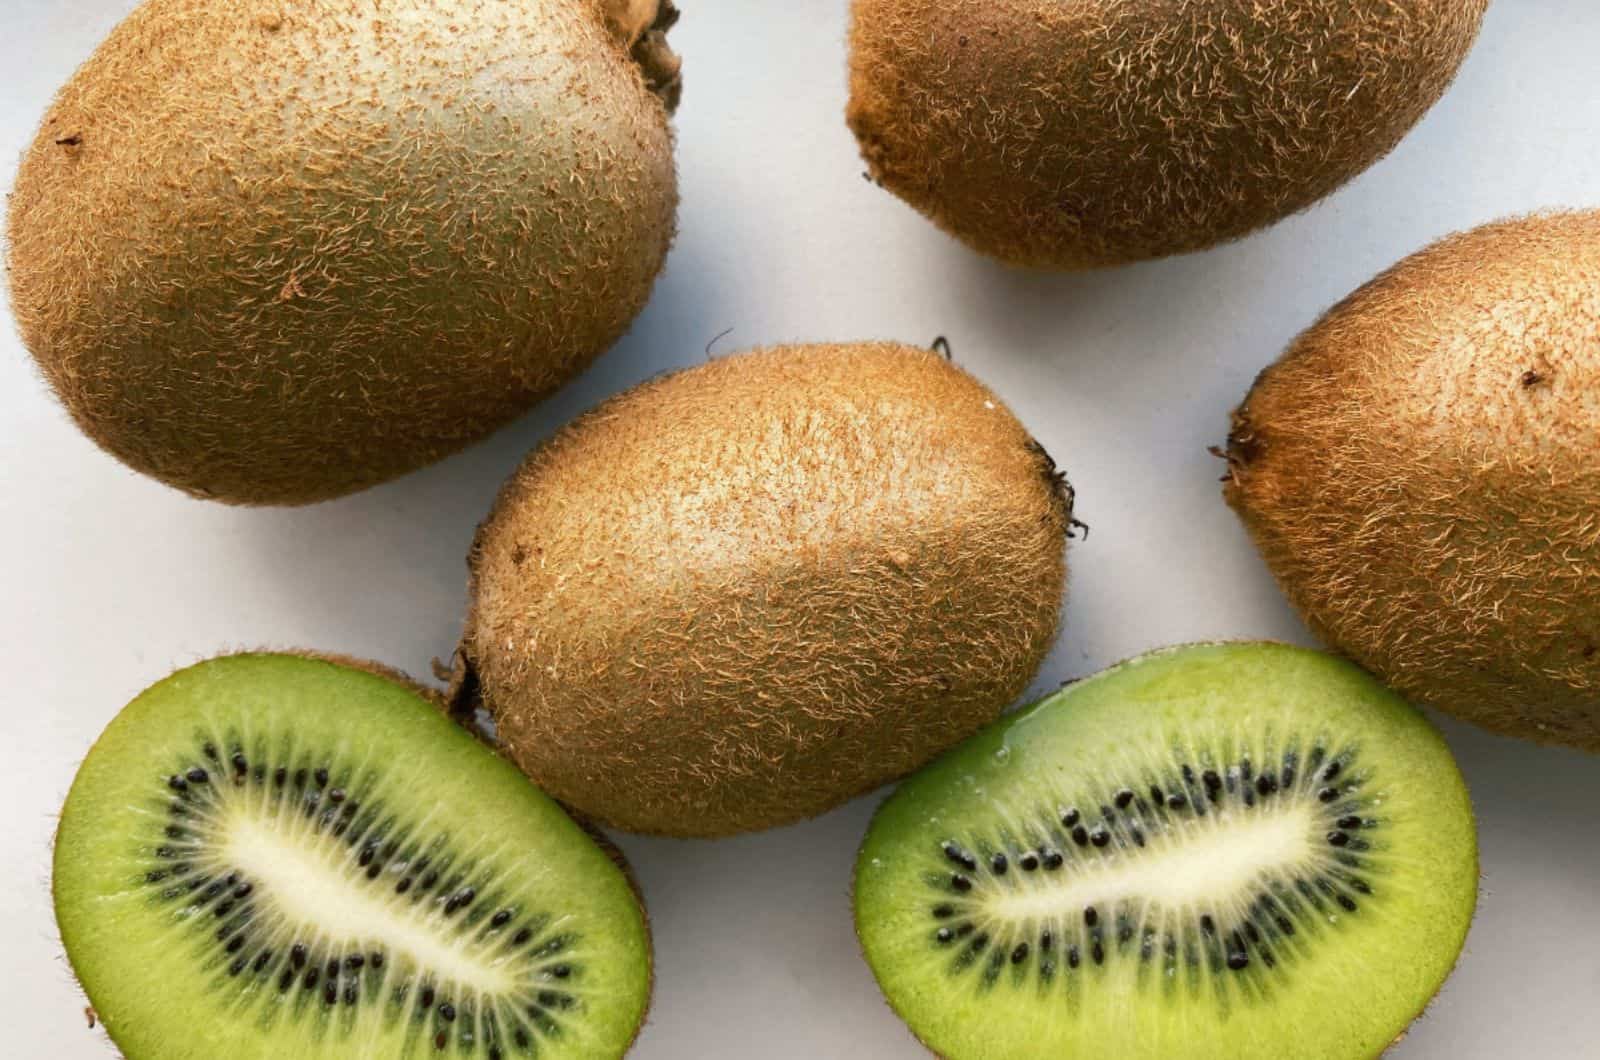 kiwi fruit top view